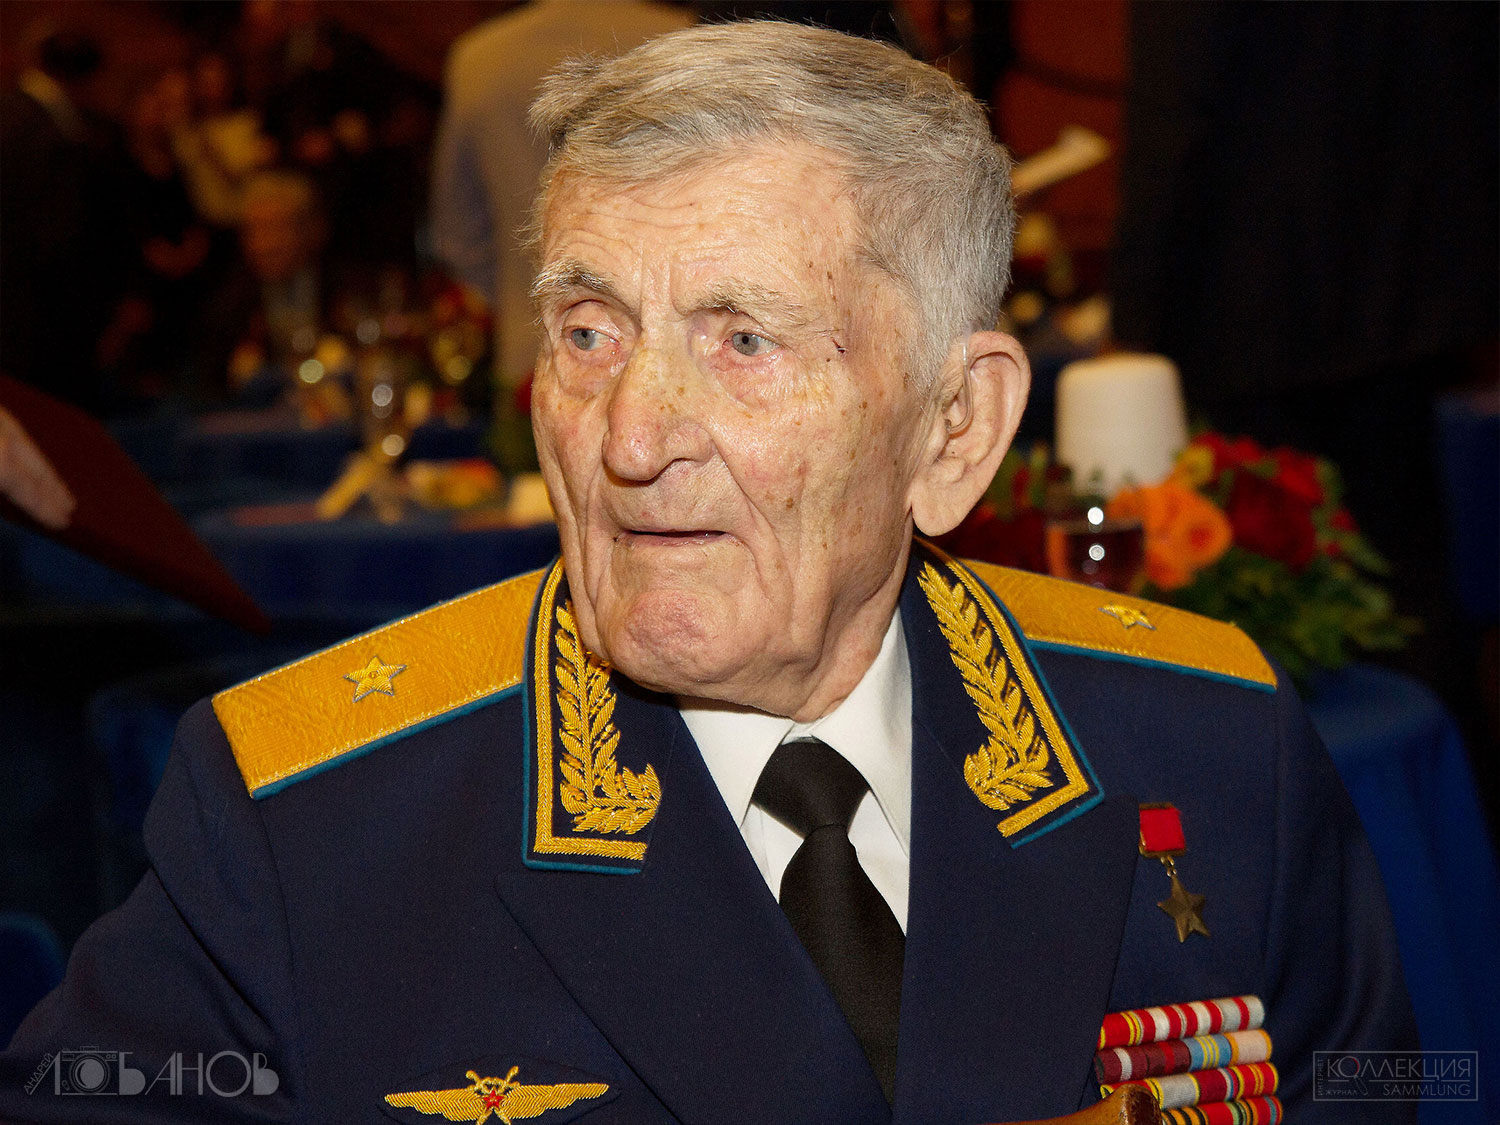 Сергей Макарович Крамаренко (1923 — 2020), Герой Советского Союза, генерал-майор авиации. Фото Андрея Лобанова